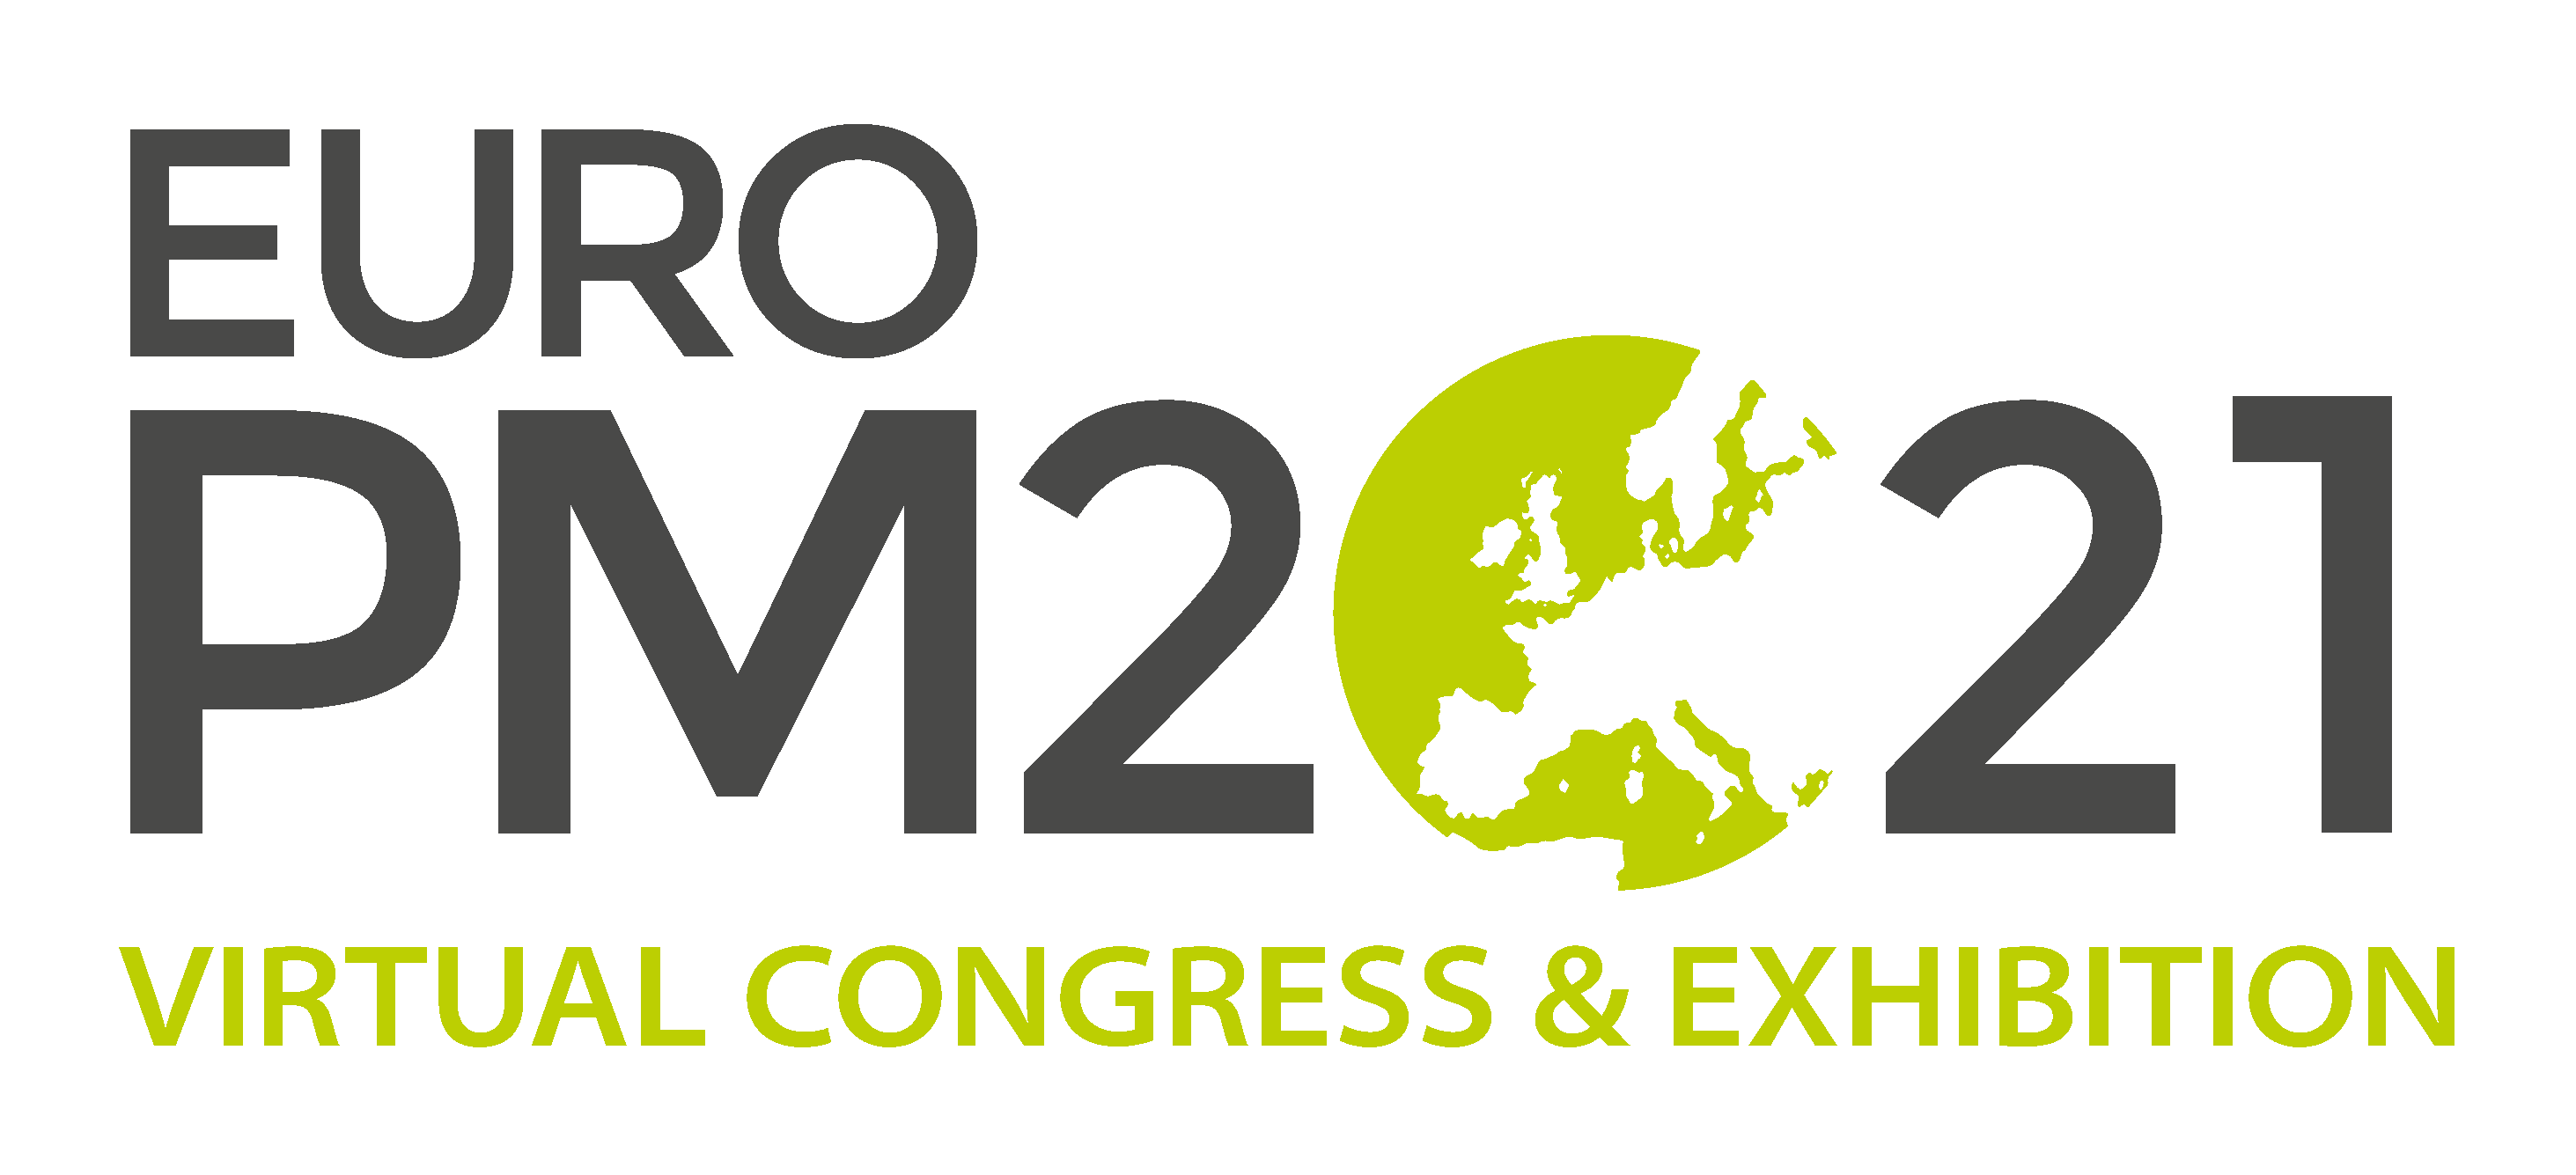 Euro PM Congress & Exhibition